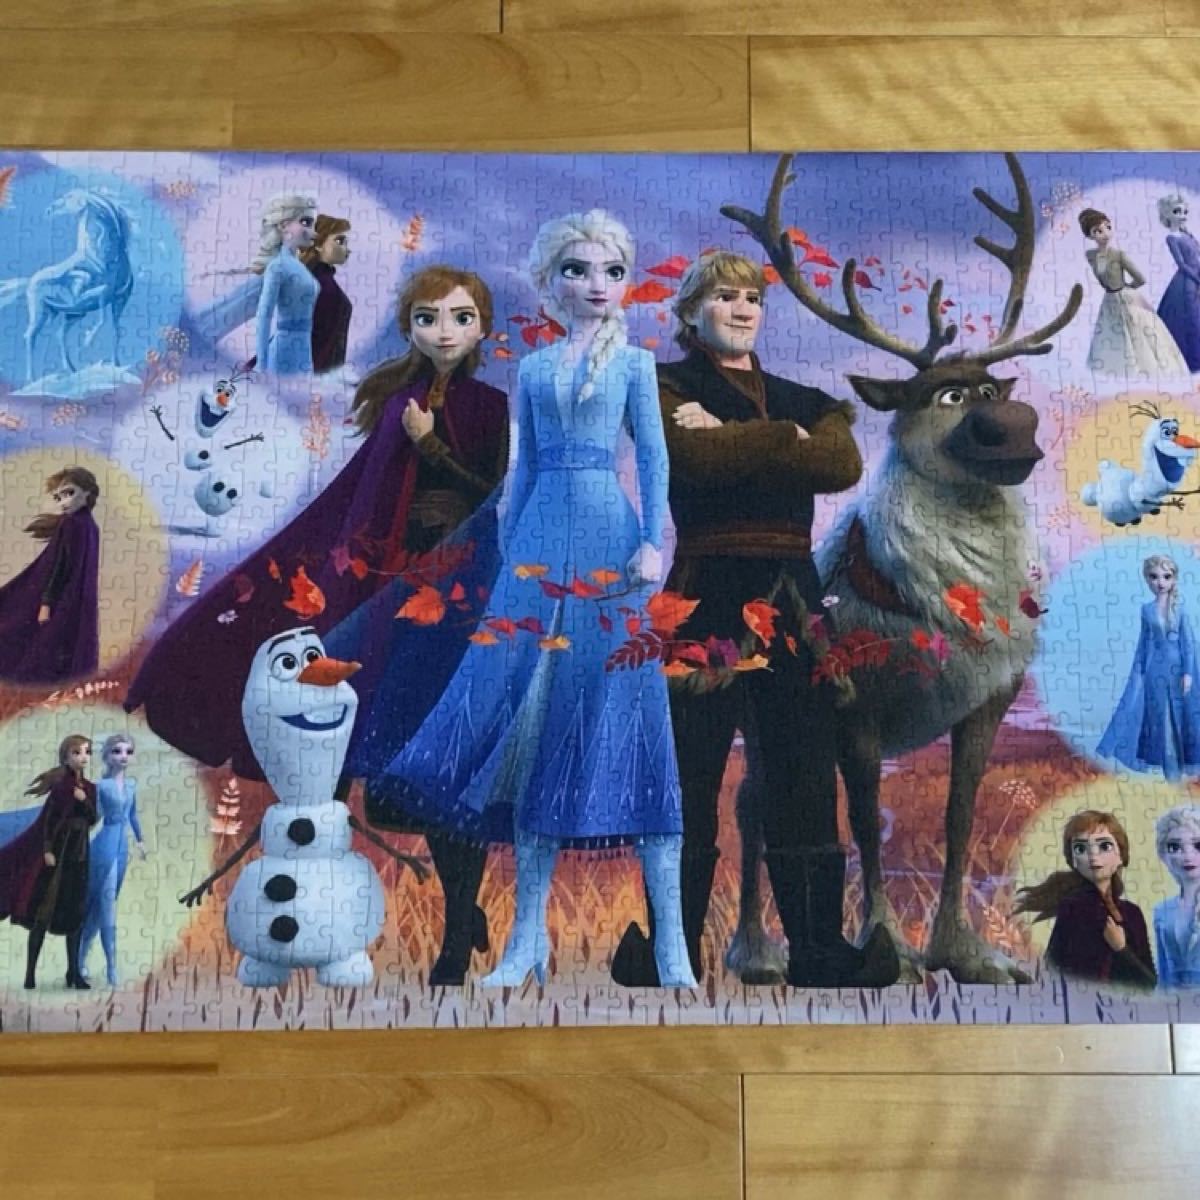 ジグソーパズル ディズニー アナと雪の女王　Frozen 2 Collection (50x75cm) 1000ピース 